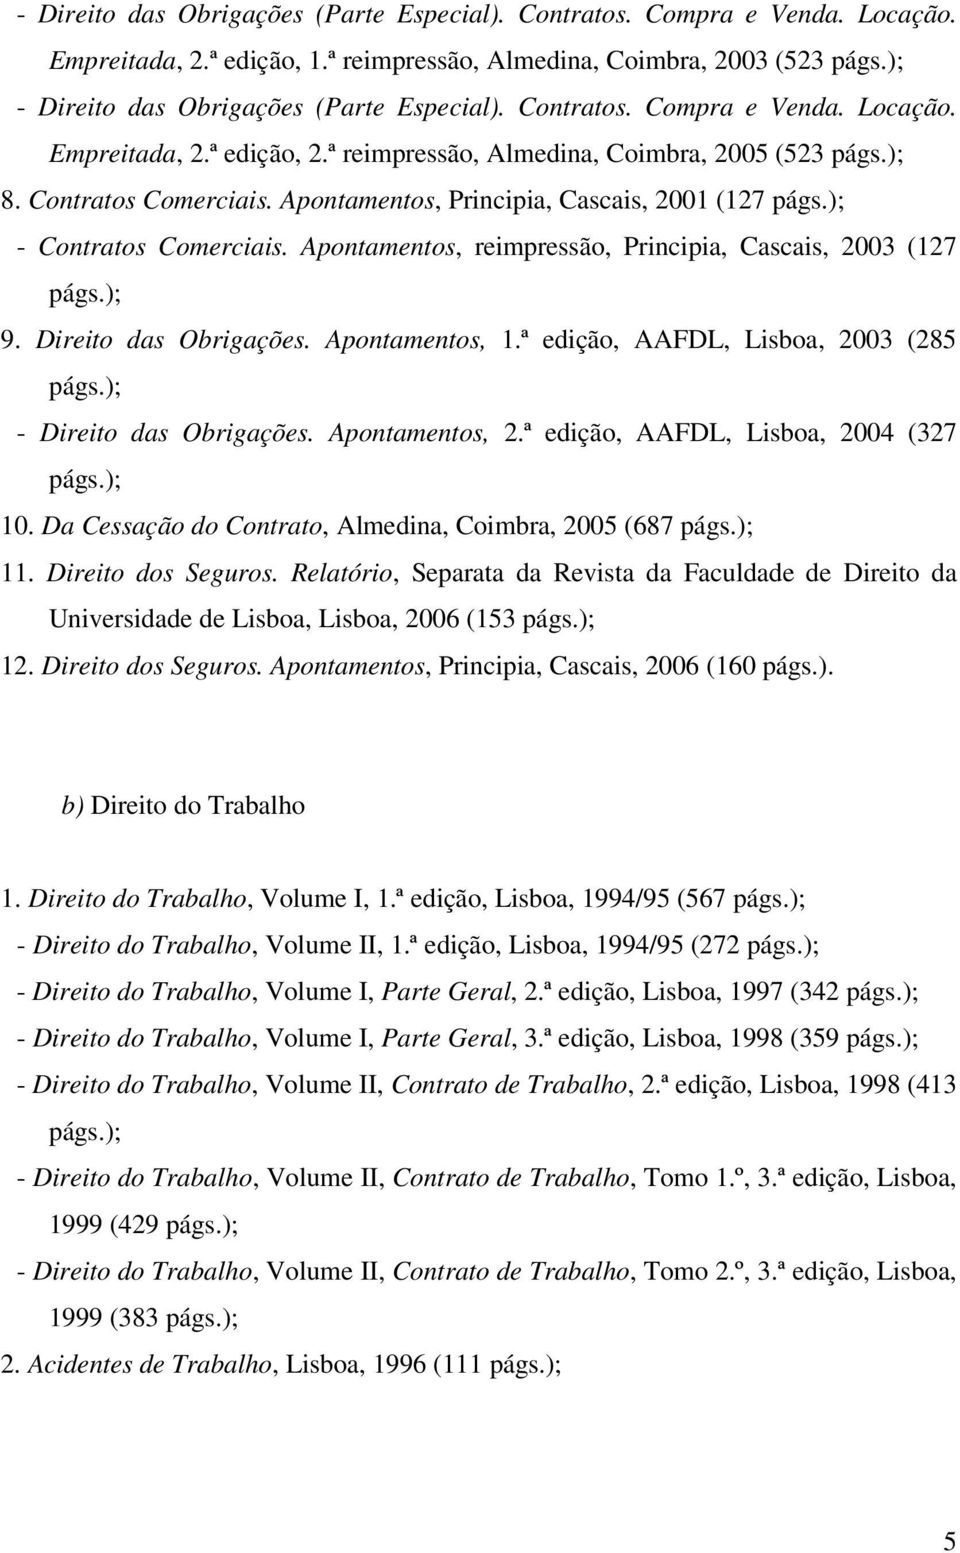 ); - Contratos Comerciais. Apontamentos, reimpressão, Principia, Cascais, 2003 (127 págs.); 9. Direito das Obrigações. Apontamentos, 1.ª edição, AAFDL, Lisboa, 2003 (285 págs.